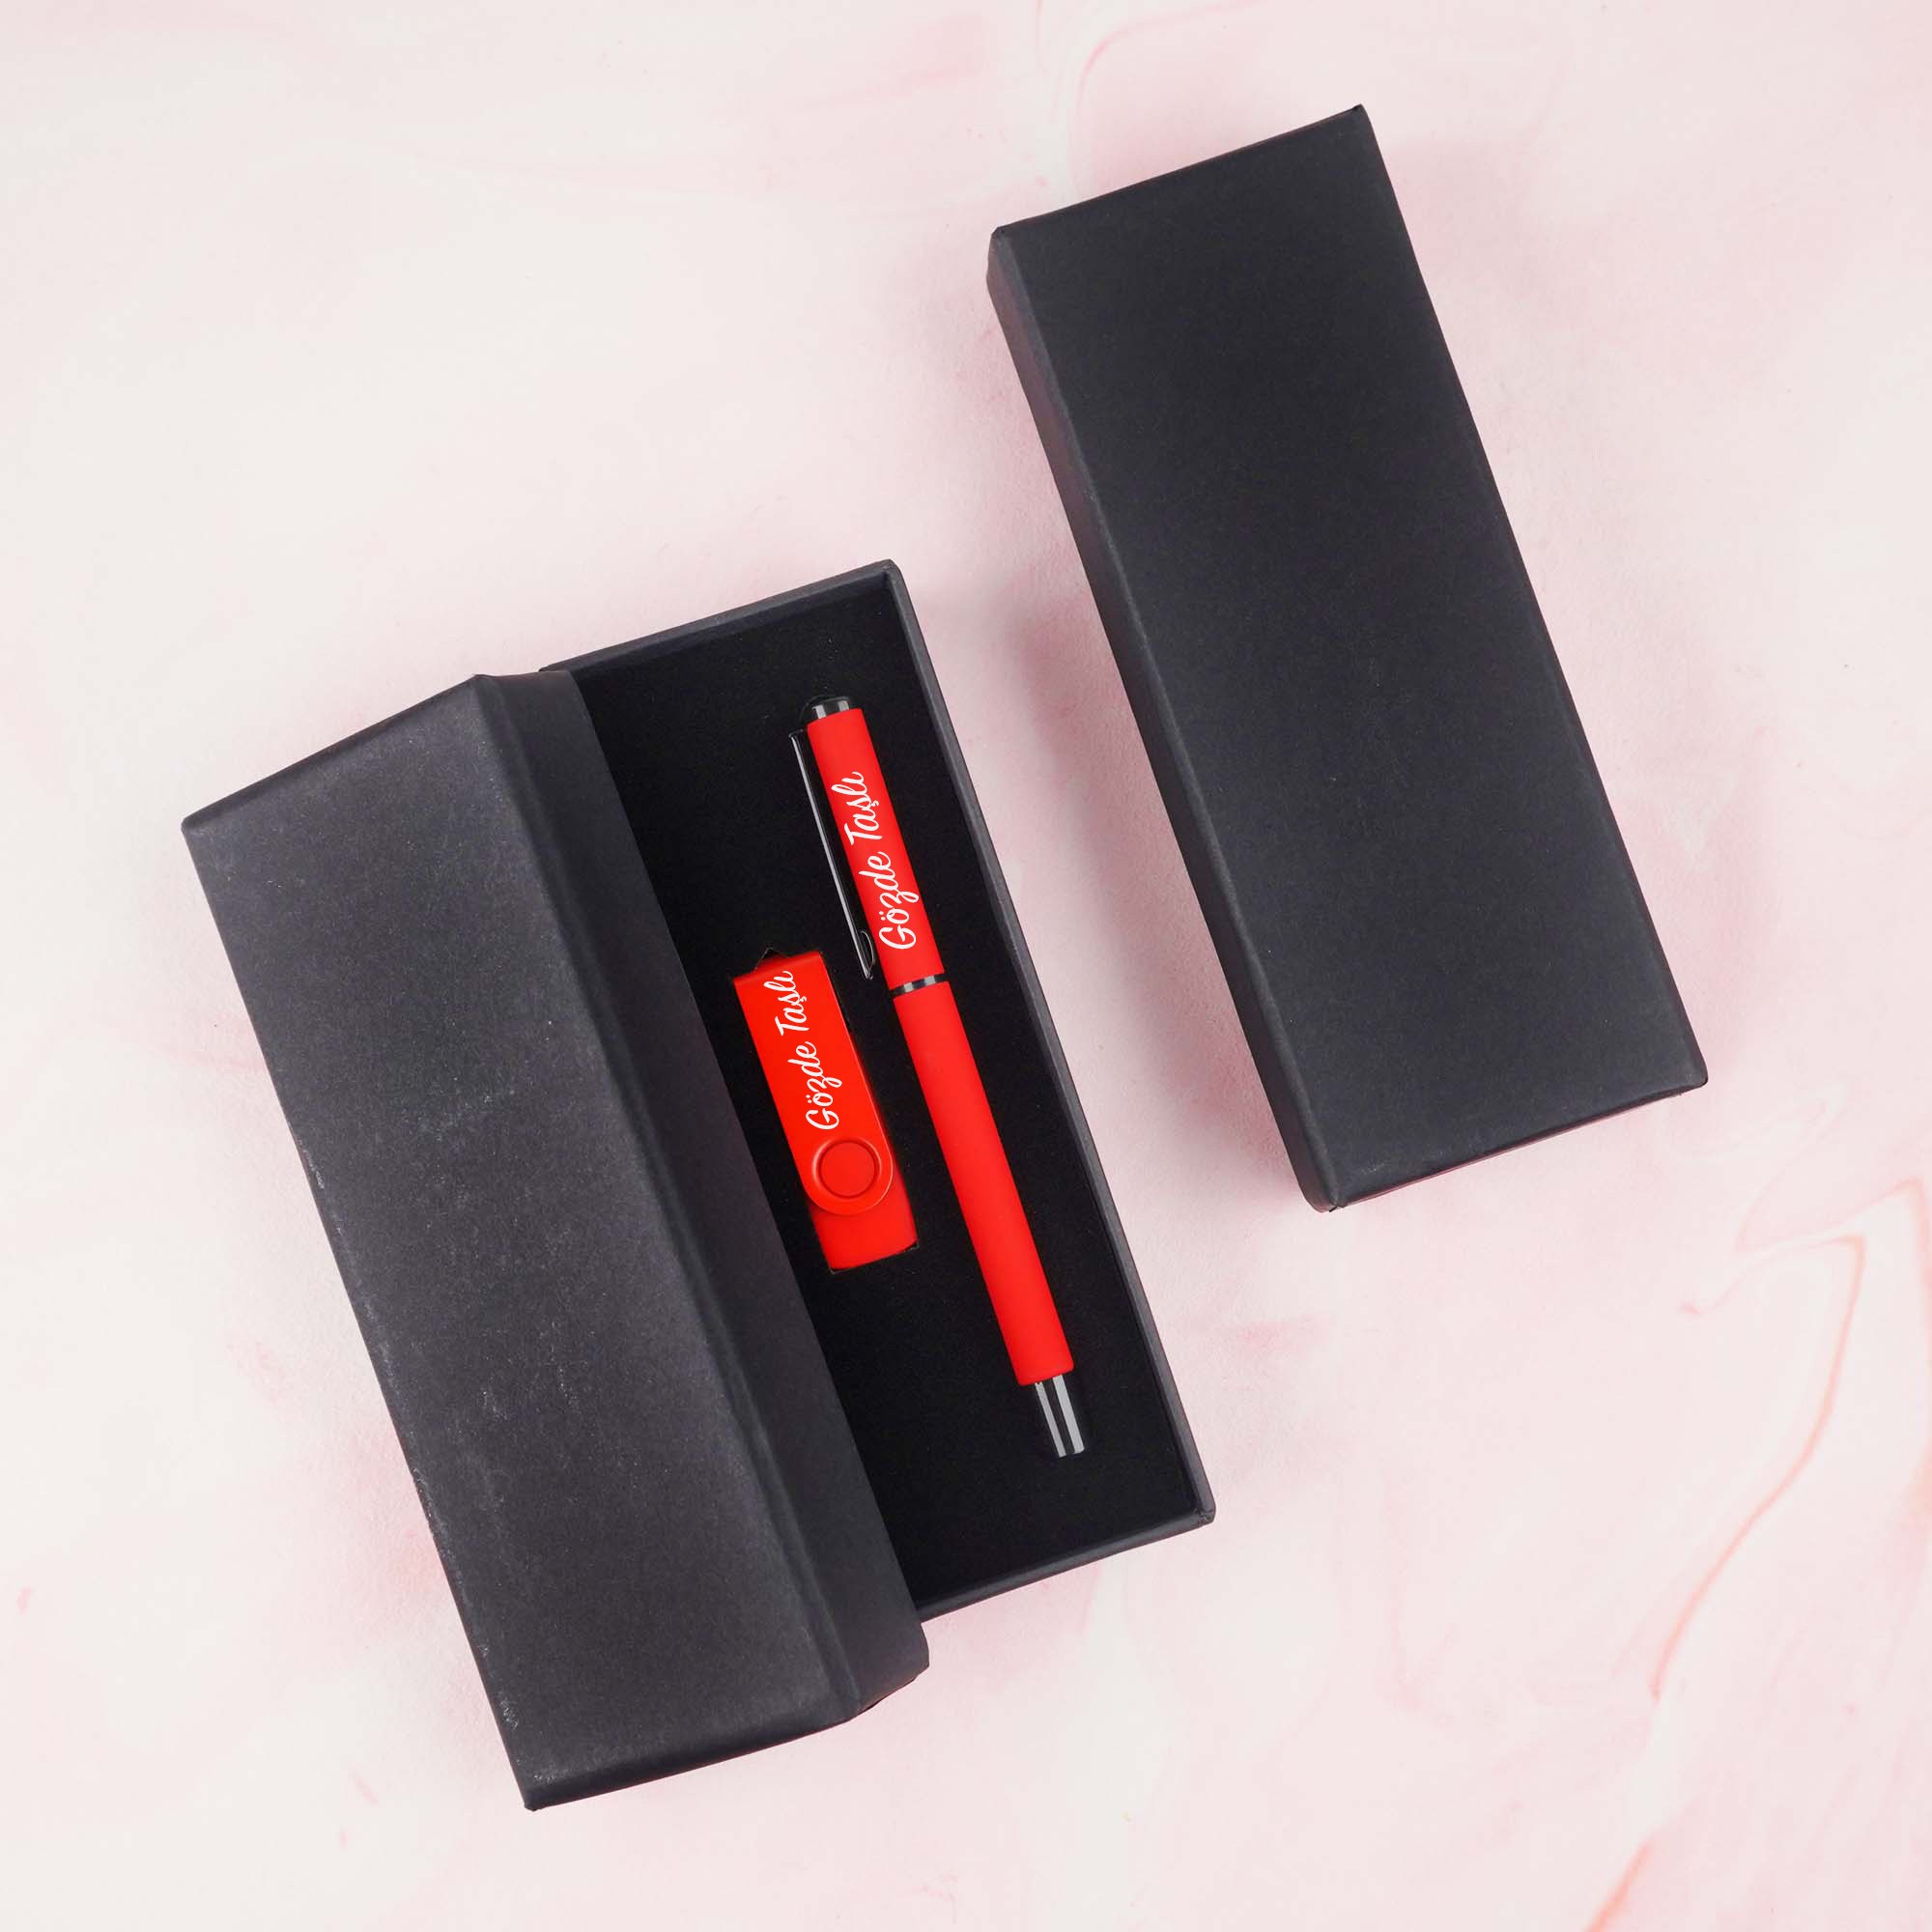 Özel Kutulu İsim Baskılı Kırmızı USB Bellek ve Kalemli Hediye Seti